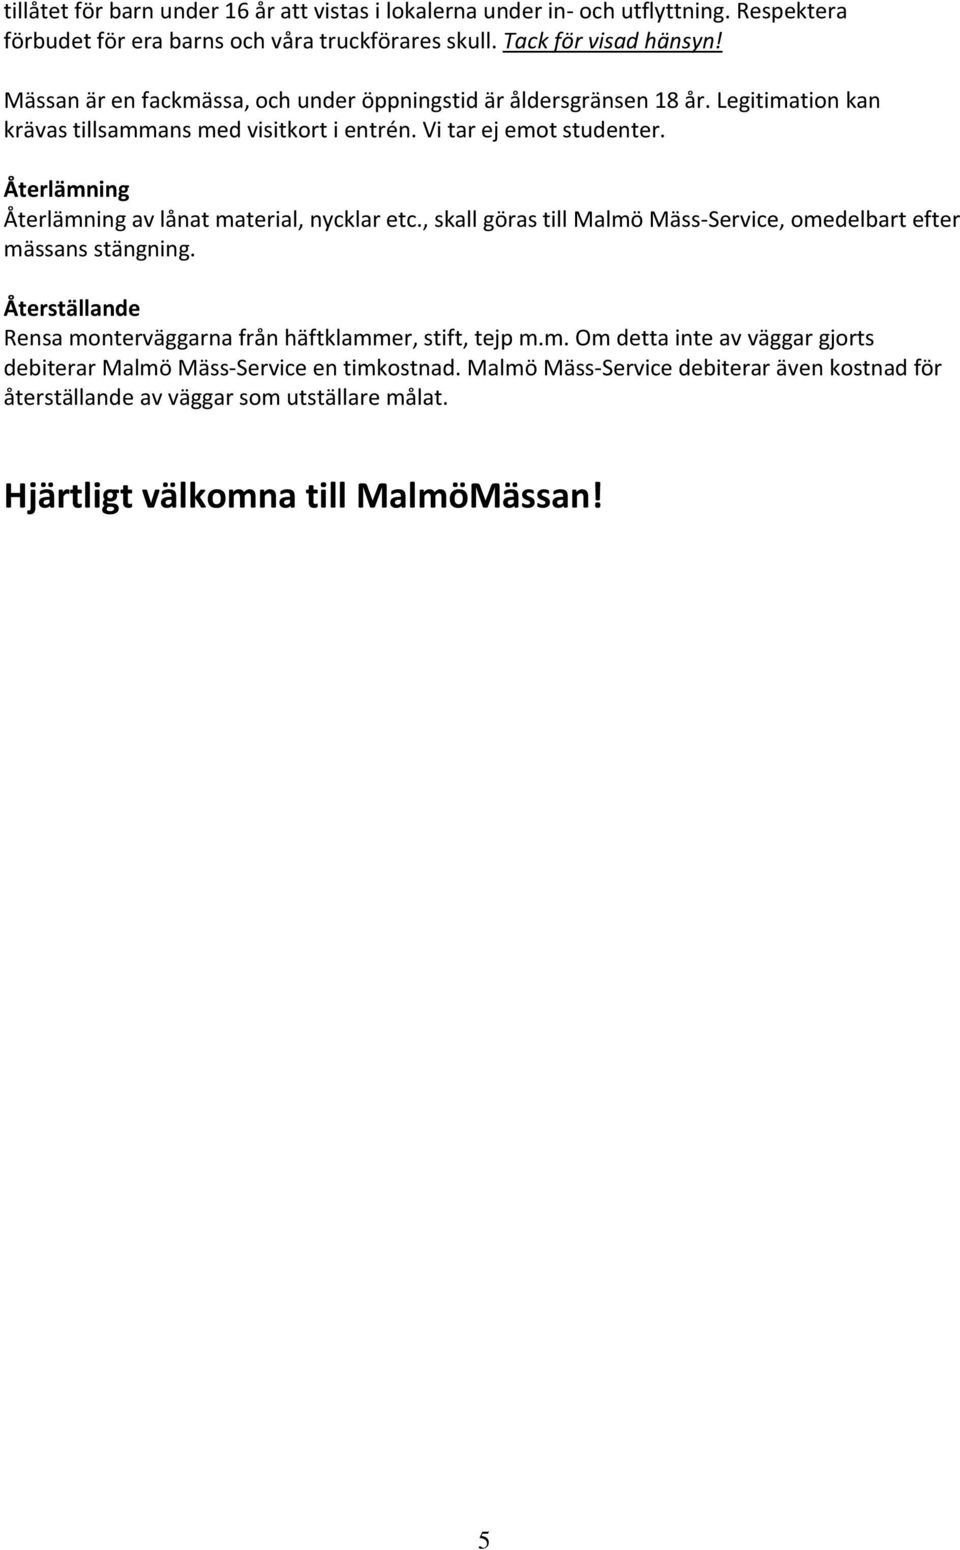 Återlämning Återlämning av lånat material, nycklar etc., skall göras till Malmö Mäss Service, omedelbart efter mässans stängning.